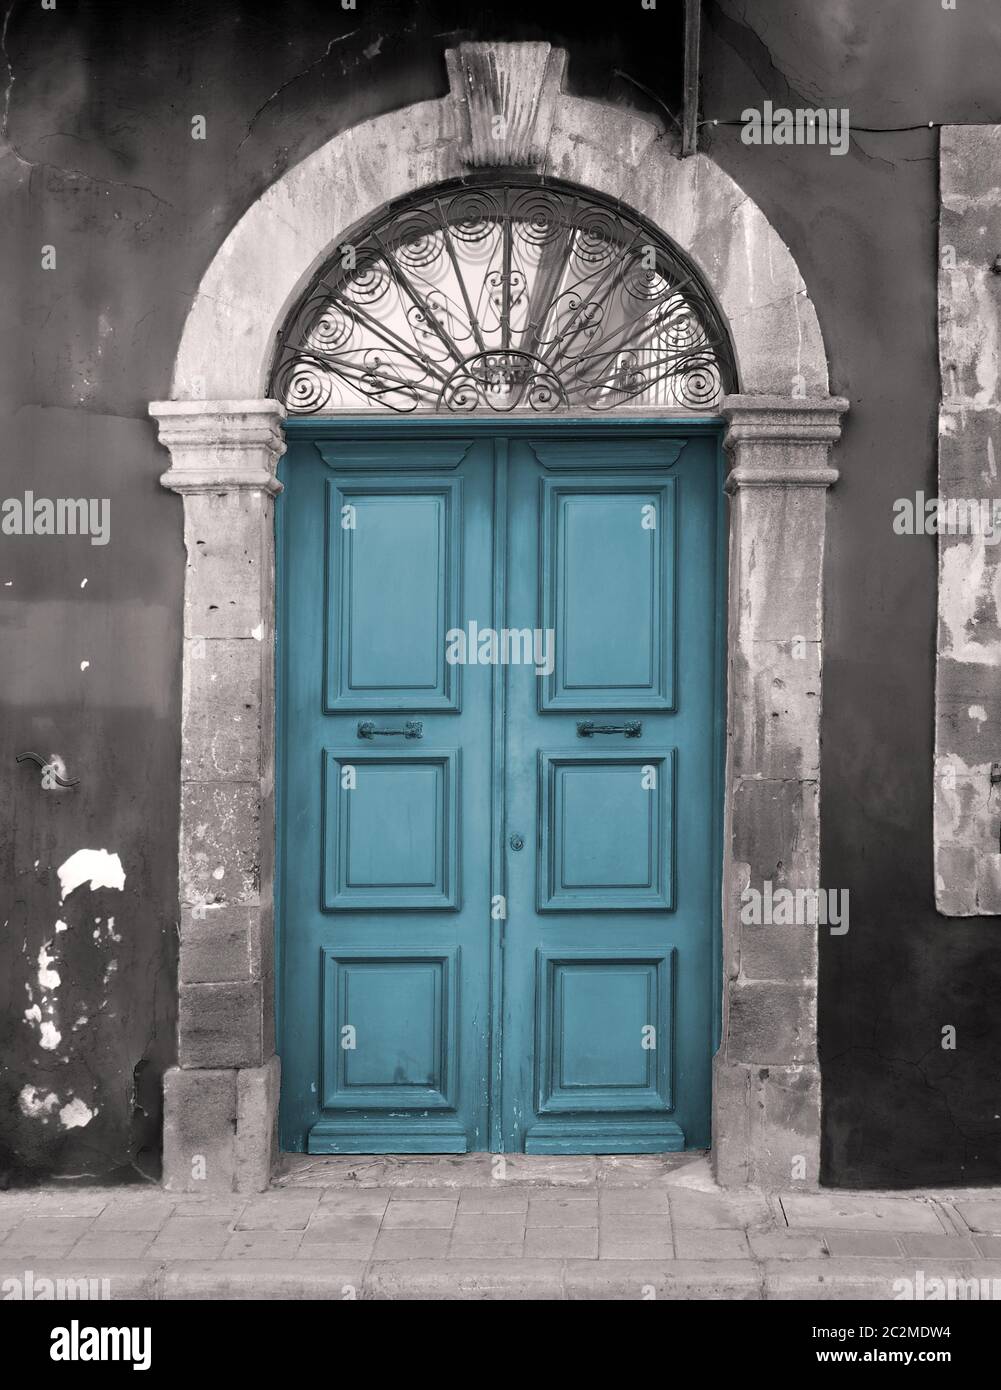 ancienne porte bleue dans un cadre en pierre voûtée avec des murs peints en écaille Banque D'Images